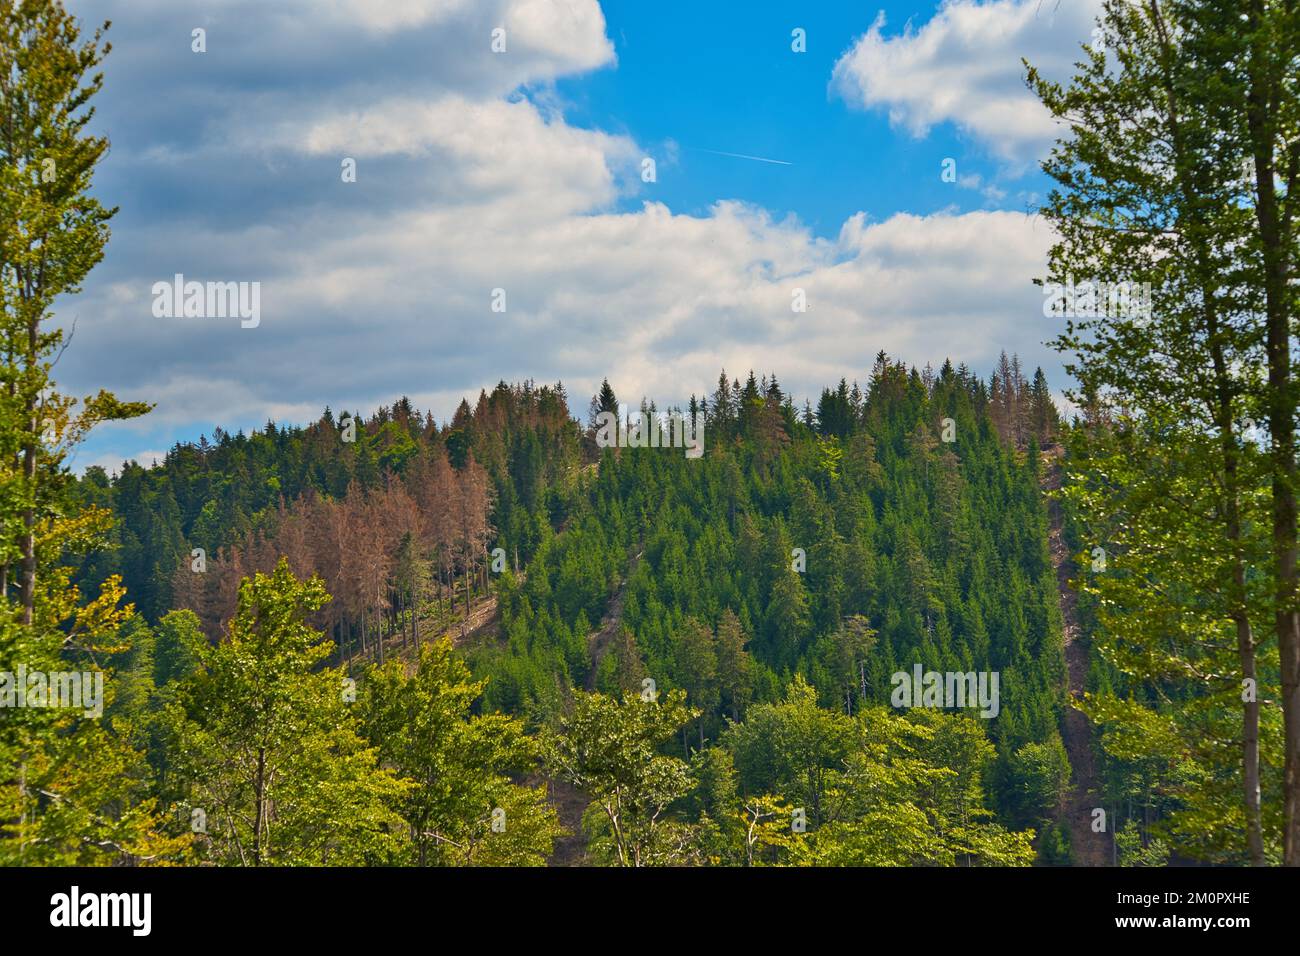 Los árboles verdes del bosque de Turingia contra el cielo nublado azul en un día soleado Foto de stock